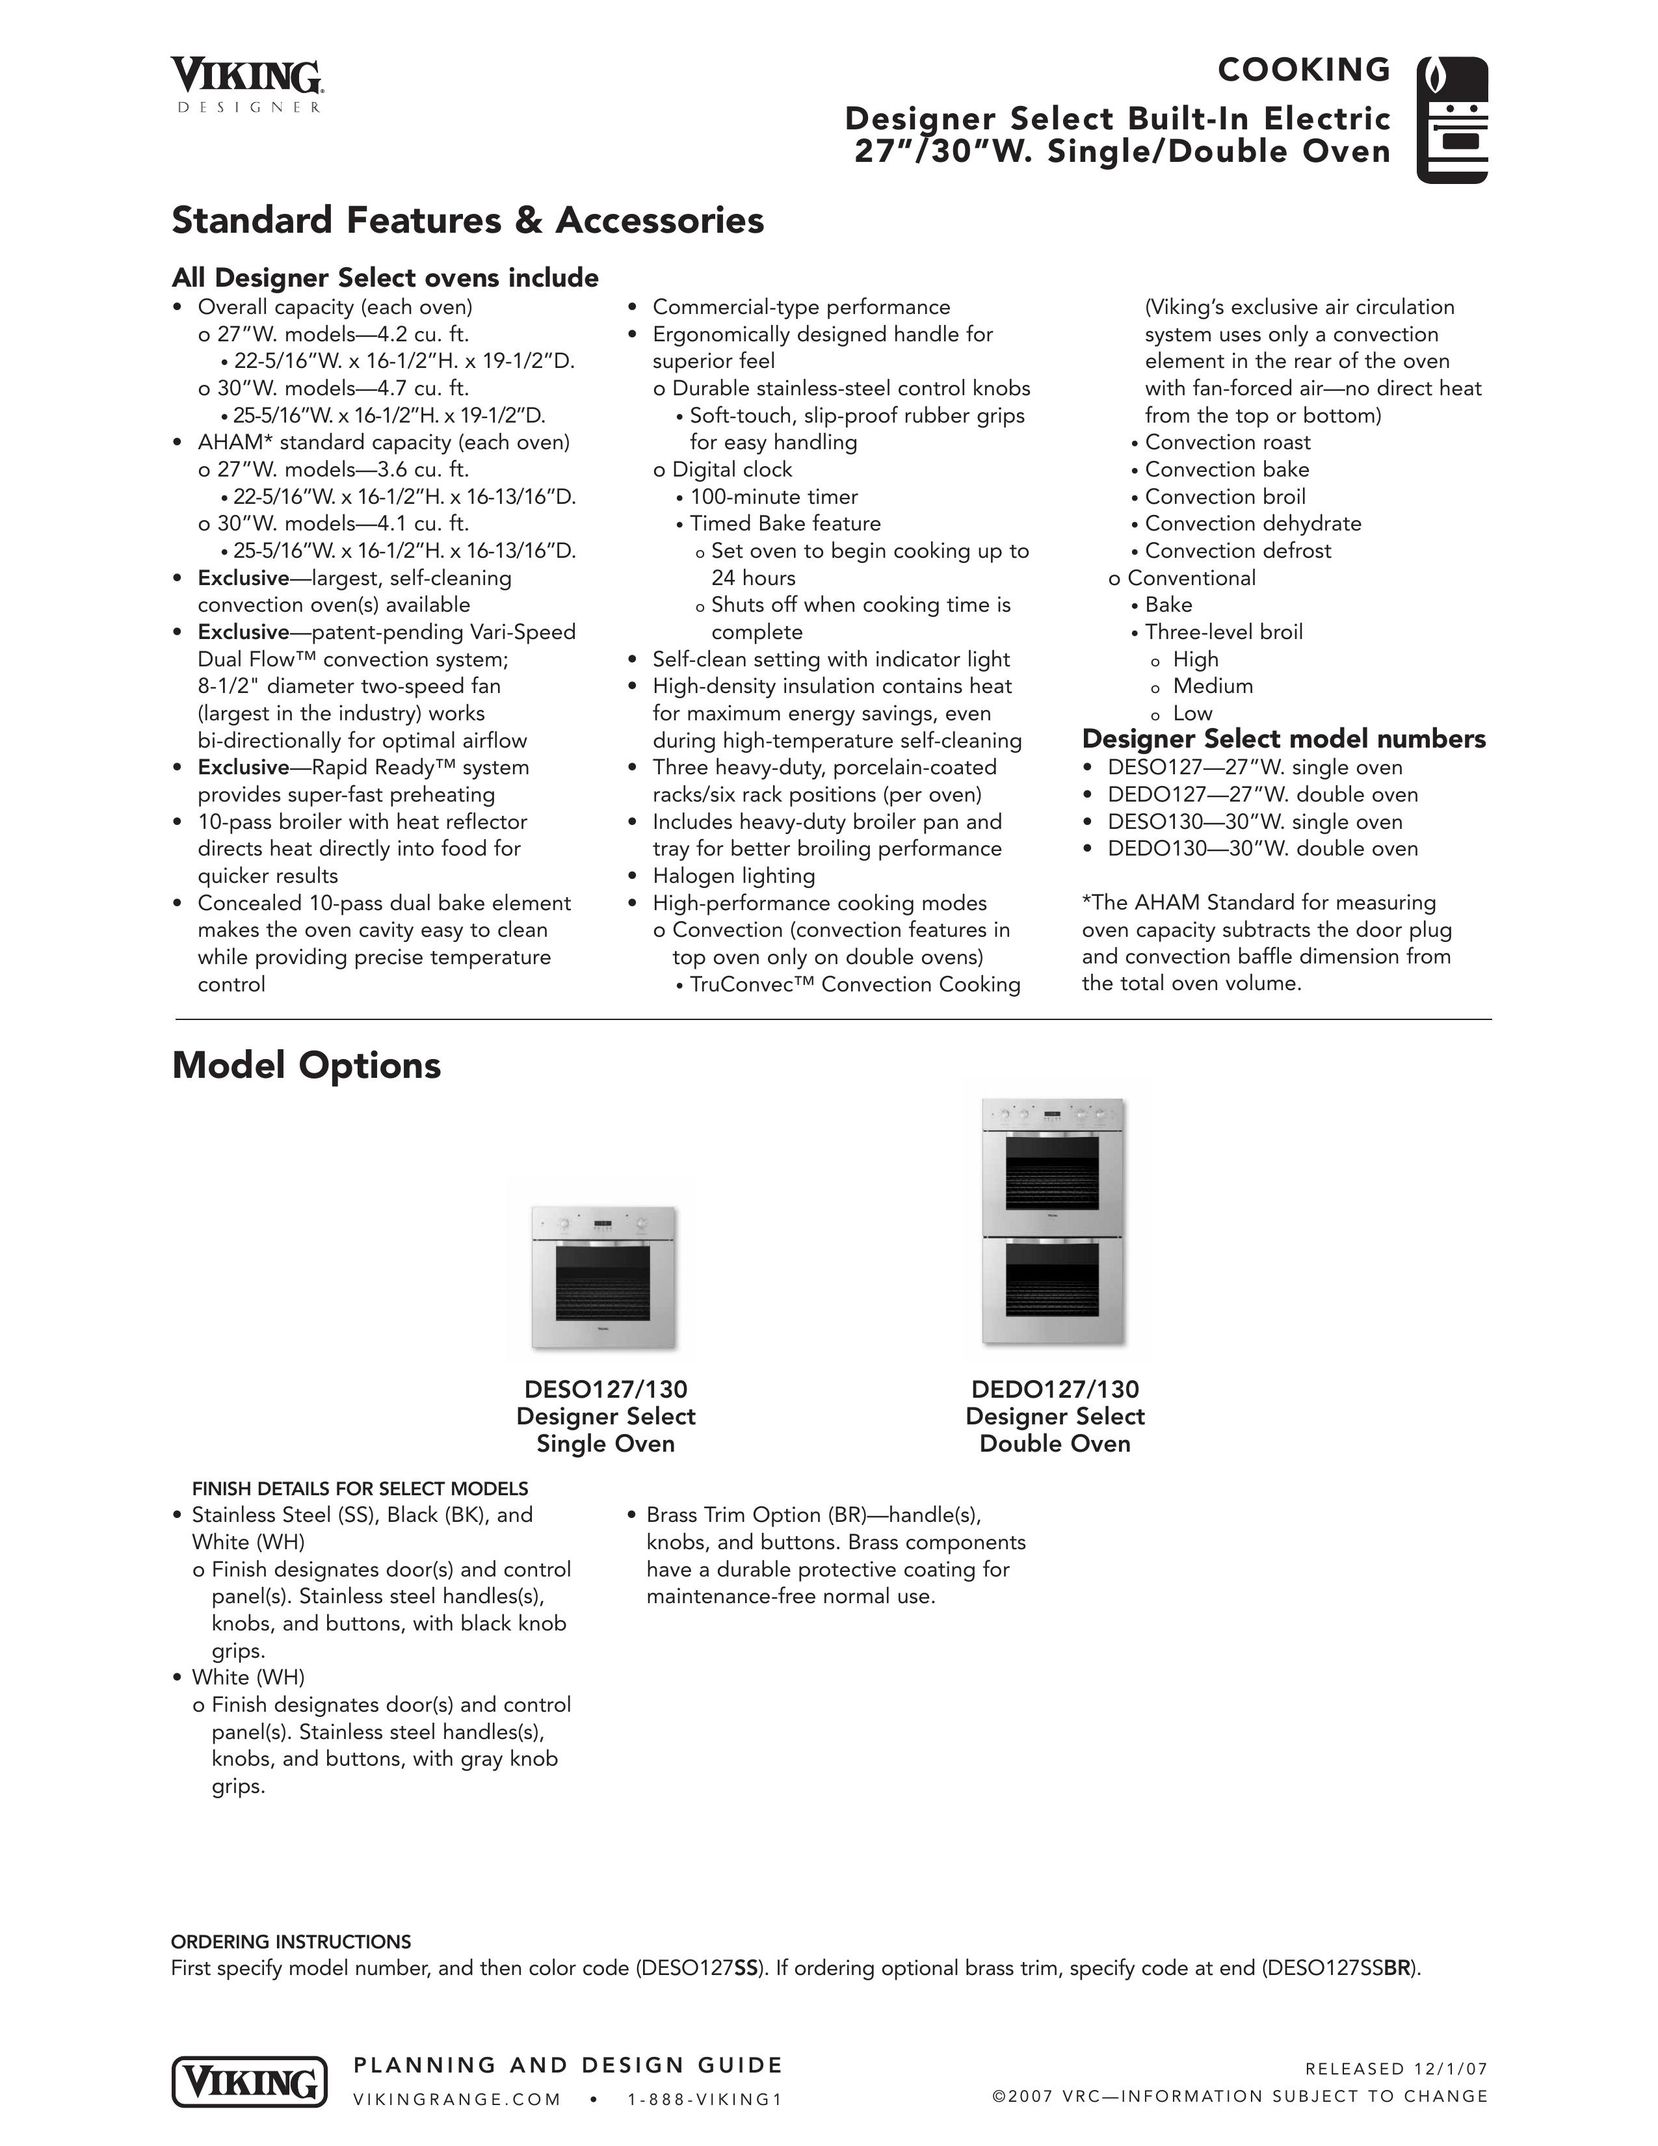 Viking DEDO Oven User Manual